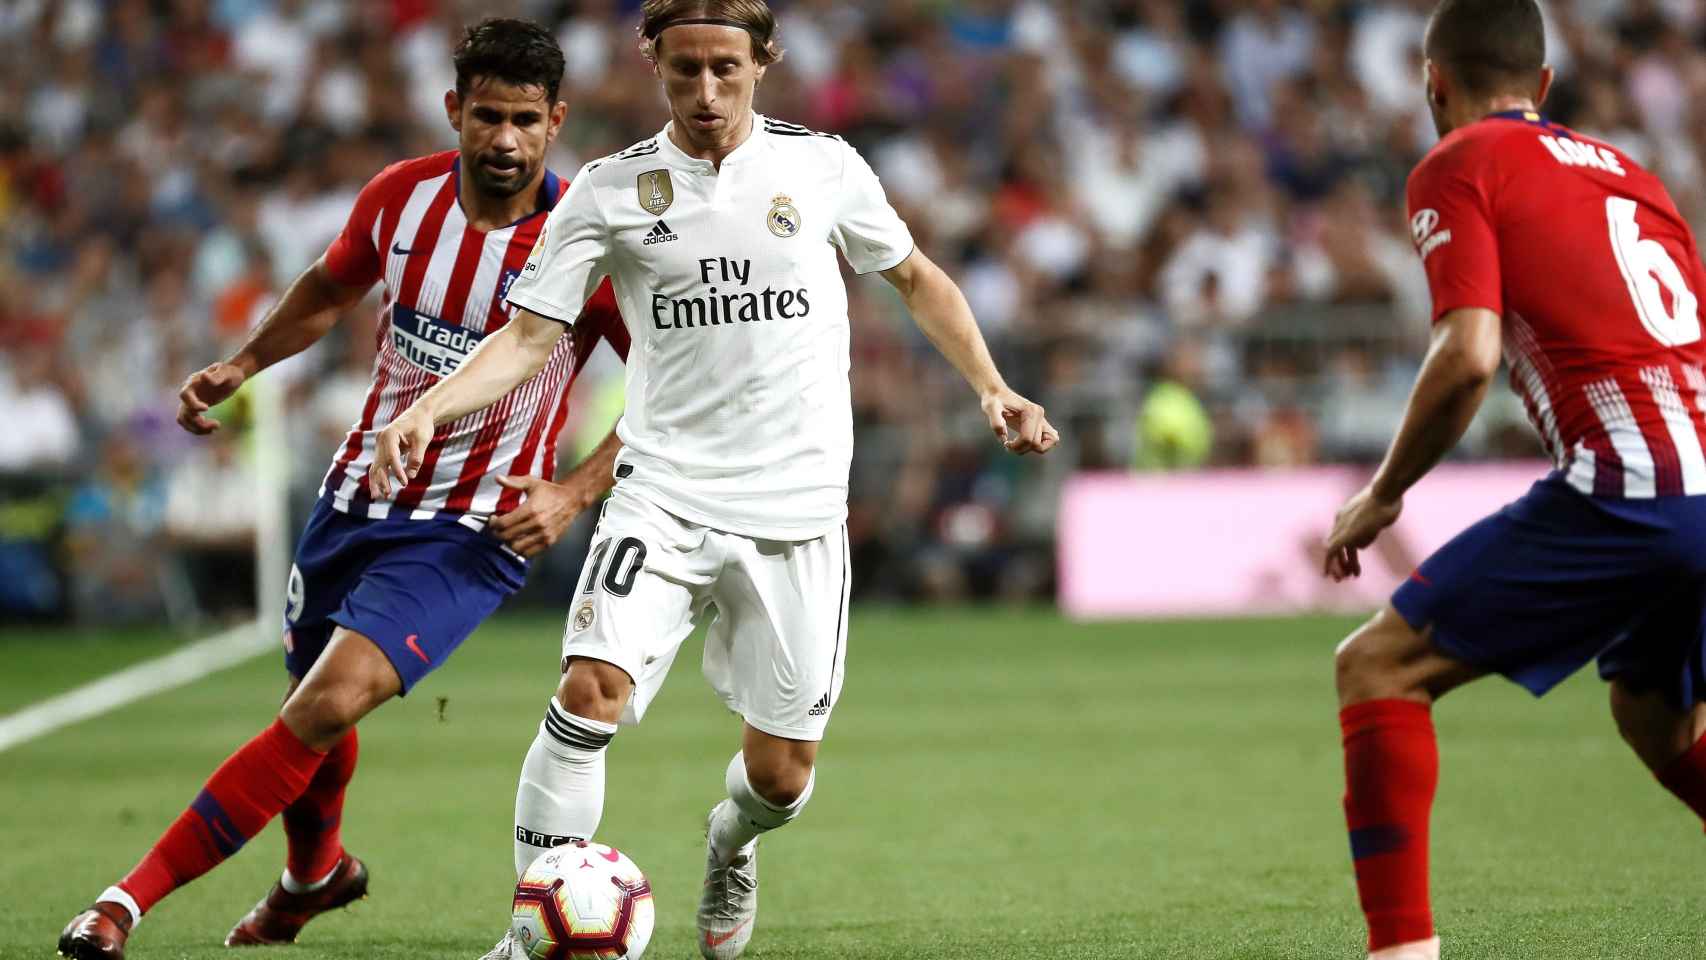 El centrocampista croata del Real Madrid, Luka Modric, conduce el balón ante el delantero hispano-brasileño del Atlético de Madrid, Diego Costa